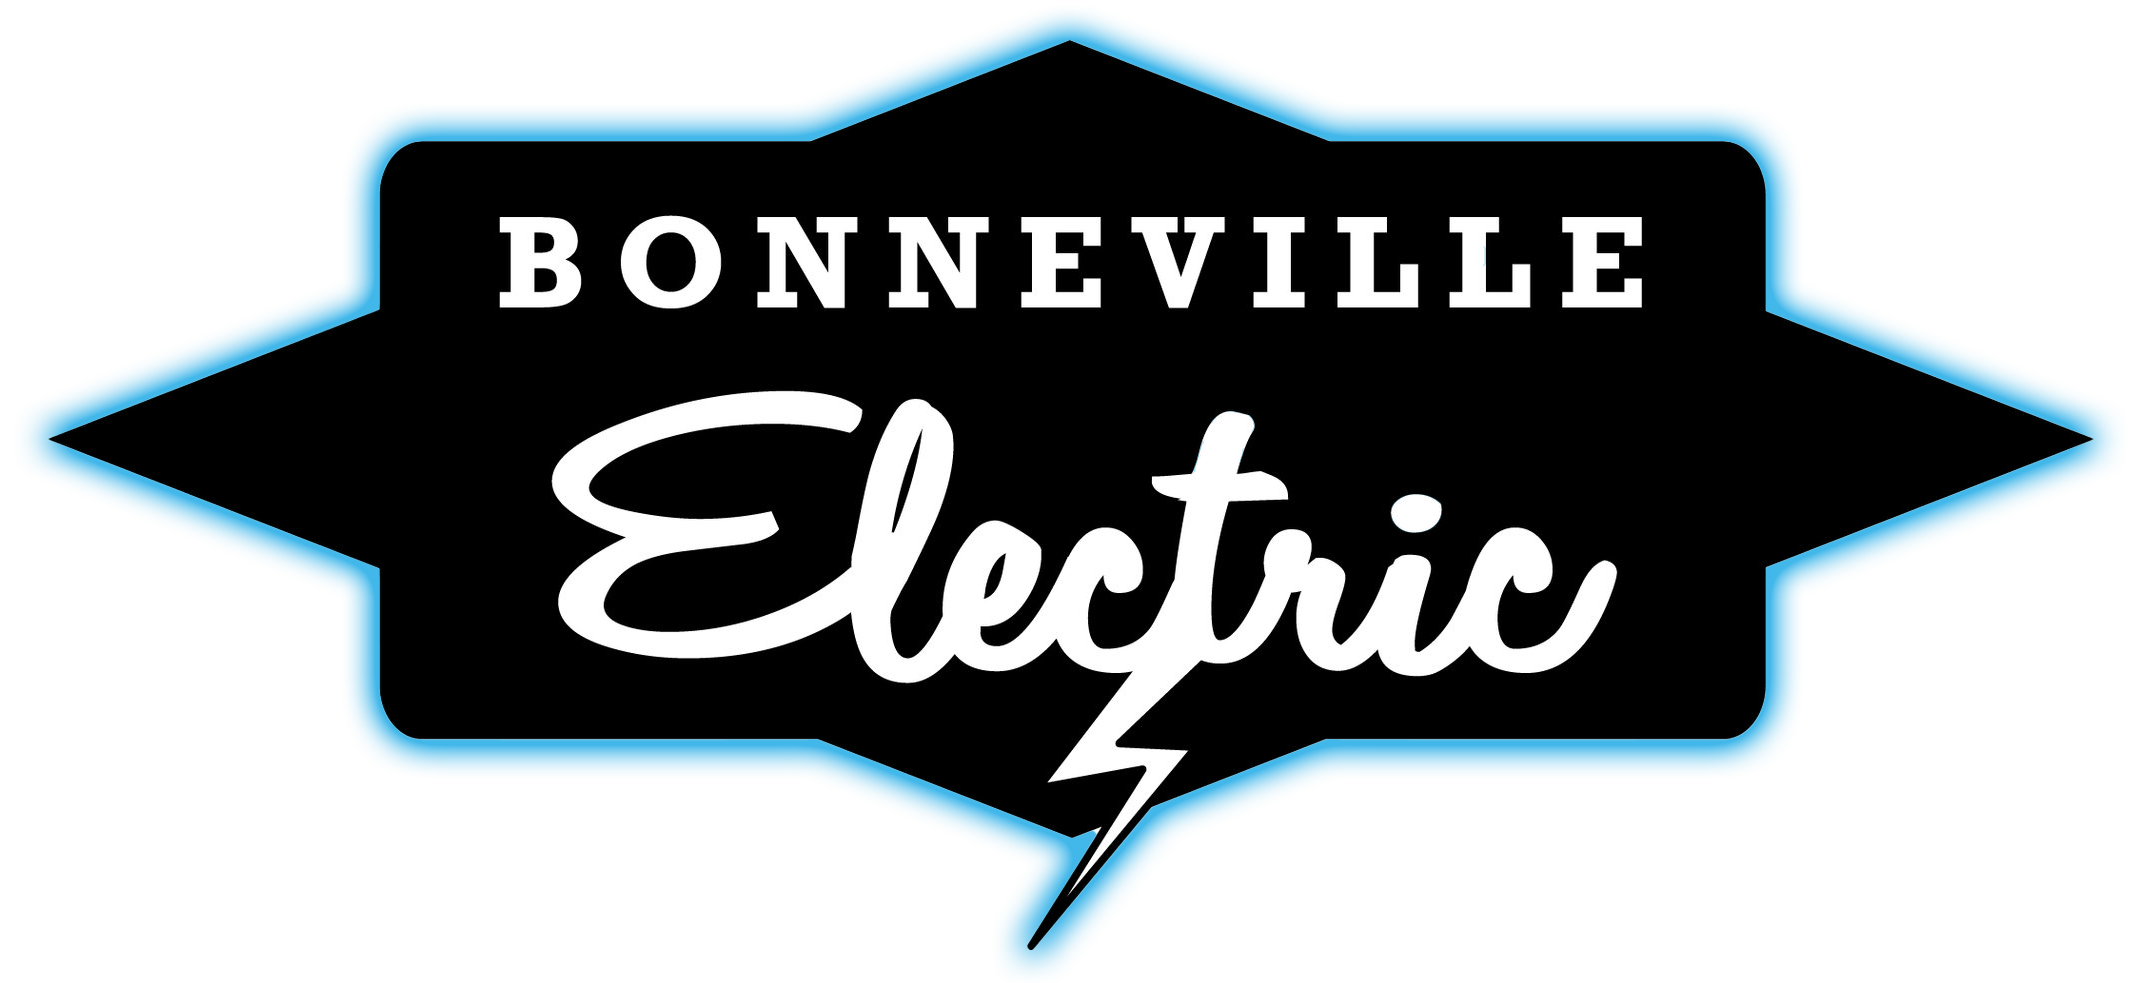 Bonneville Electric